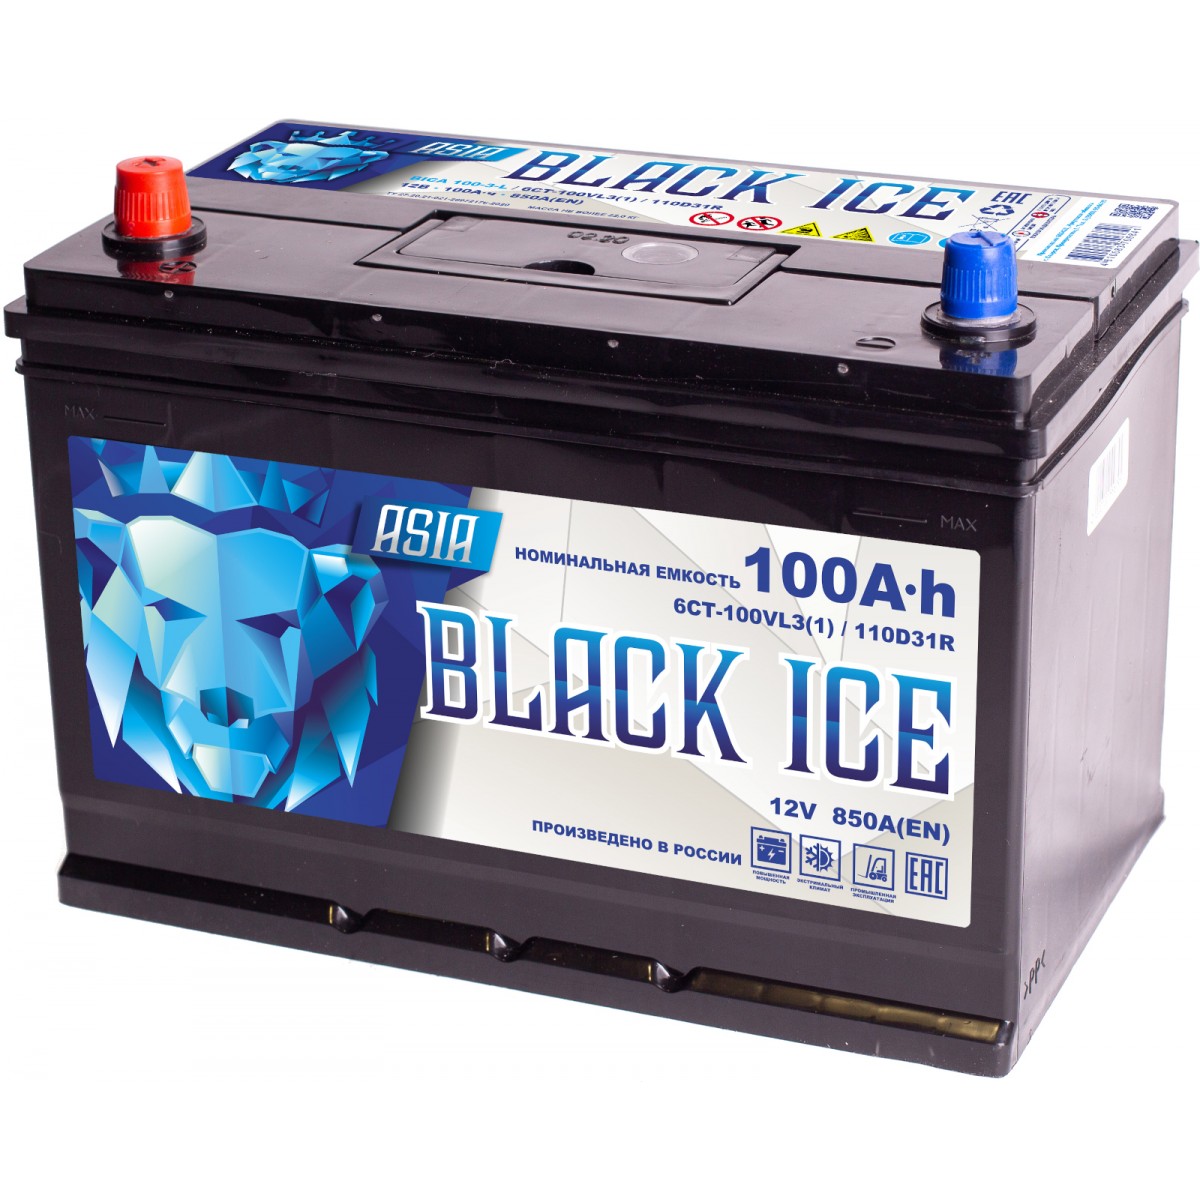 Аккумулятор автомобильный BLACK ICE Pro 110D31R (АКТЕХ) 100Ah